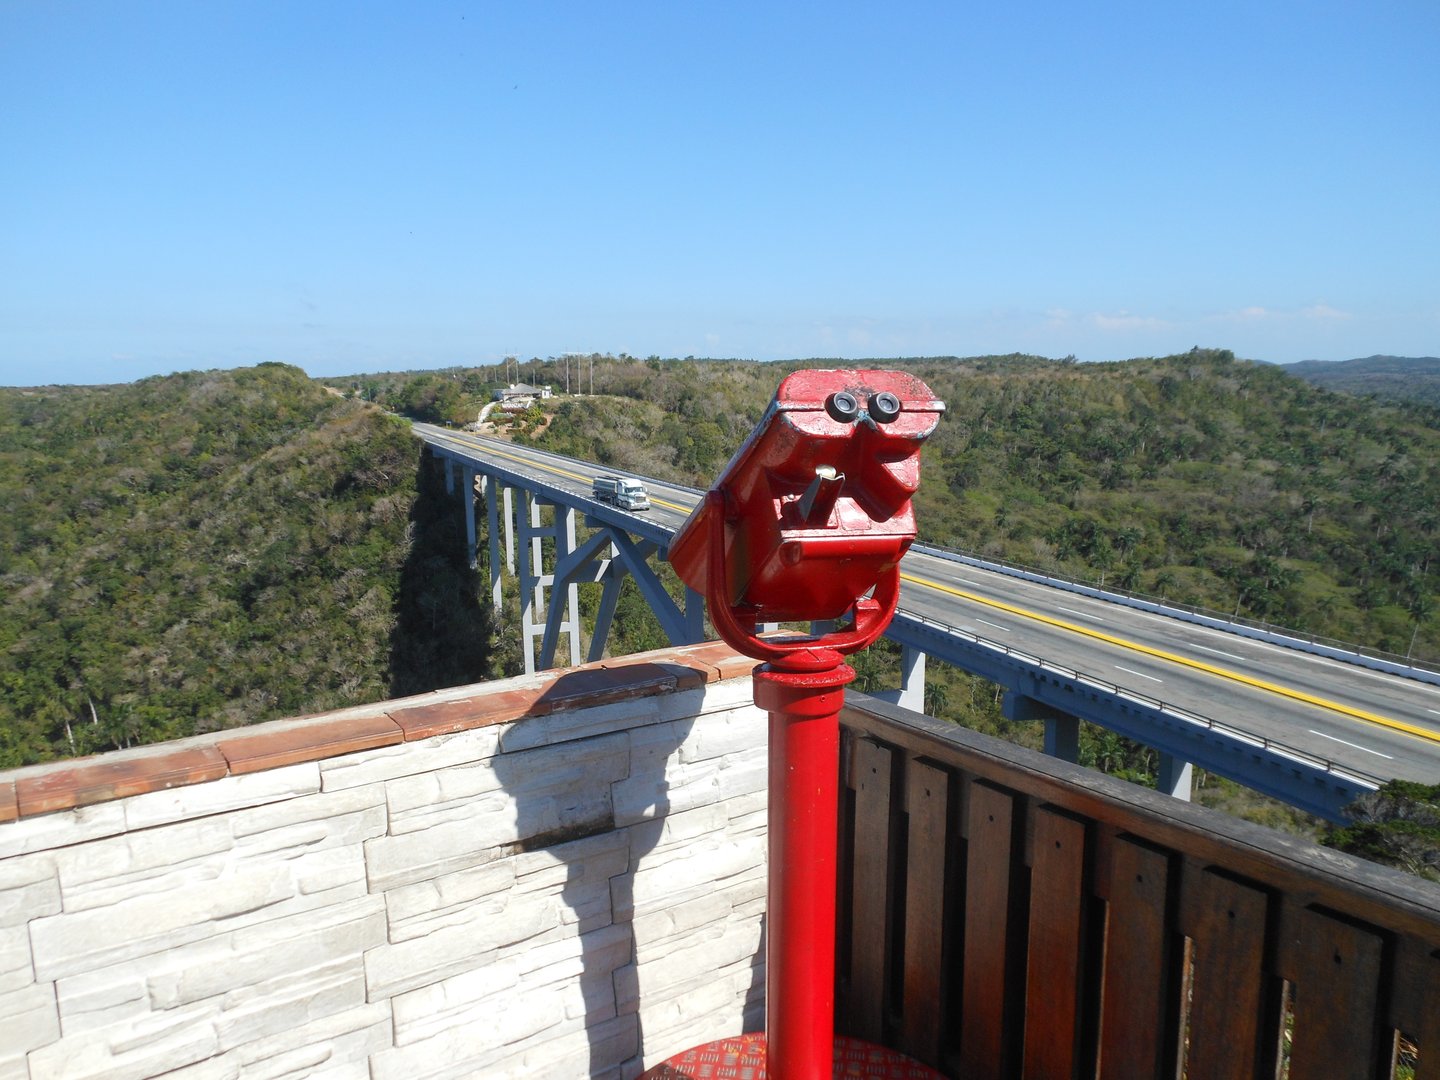 Vista desde el mirador sobre el puente de Bacunayagua en Cuba